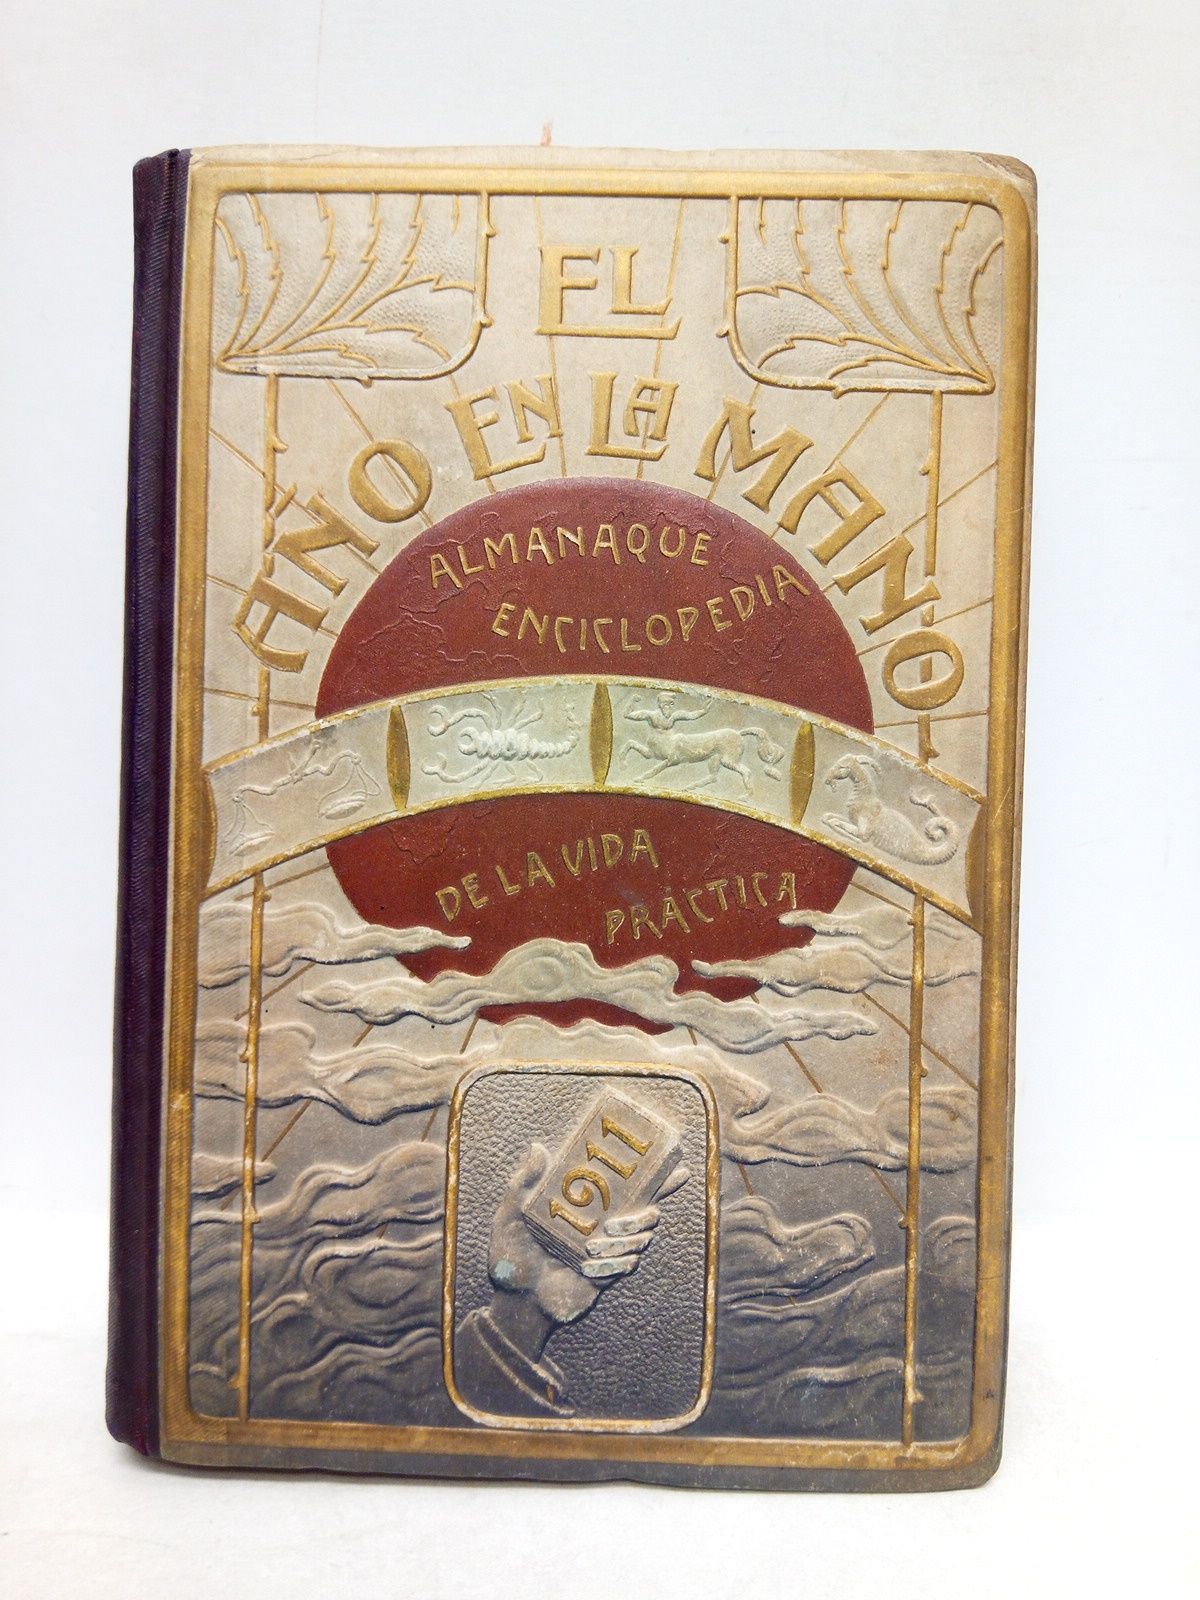 EL AO EN LA MANO - Almanaque-Enciclopedia de la vida prctica. 1911. Ao 4 de su publicacin